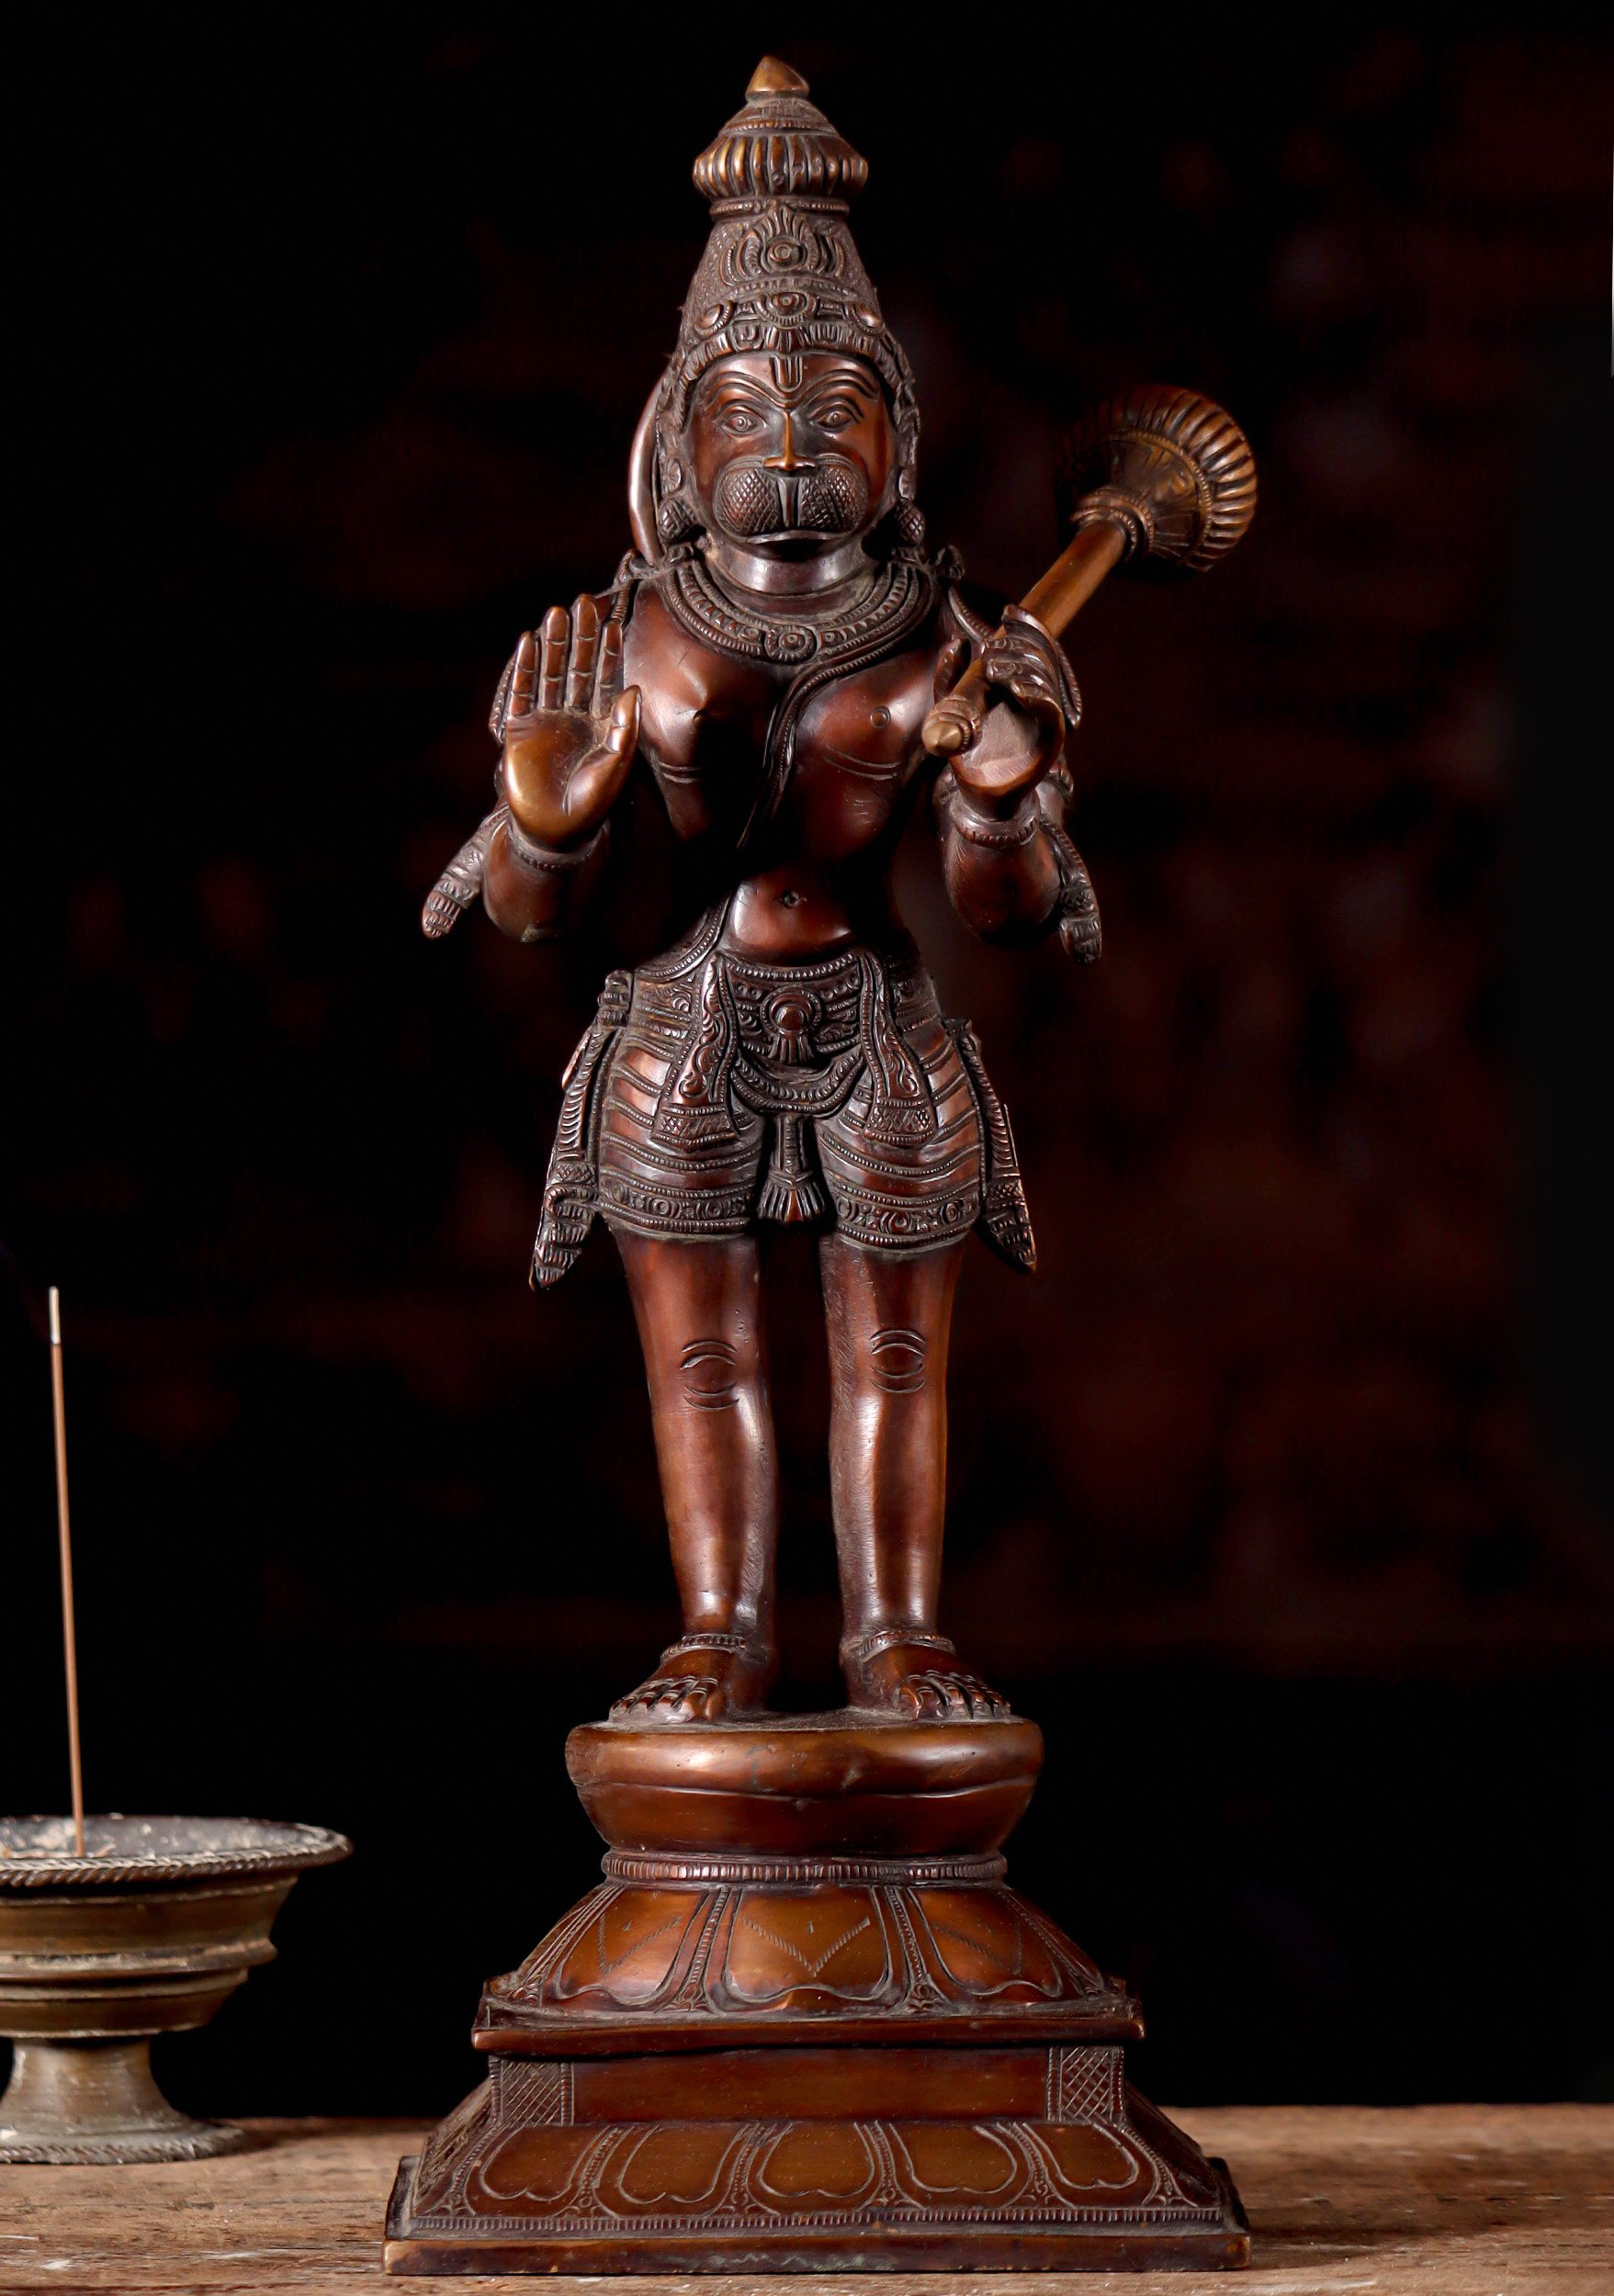 Buddhist Mudra & posture 佛教手印和姿势